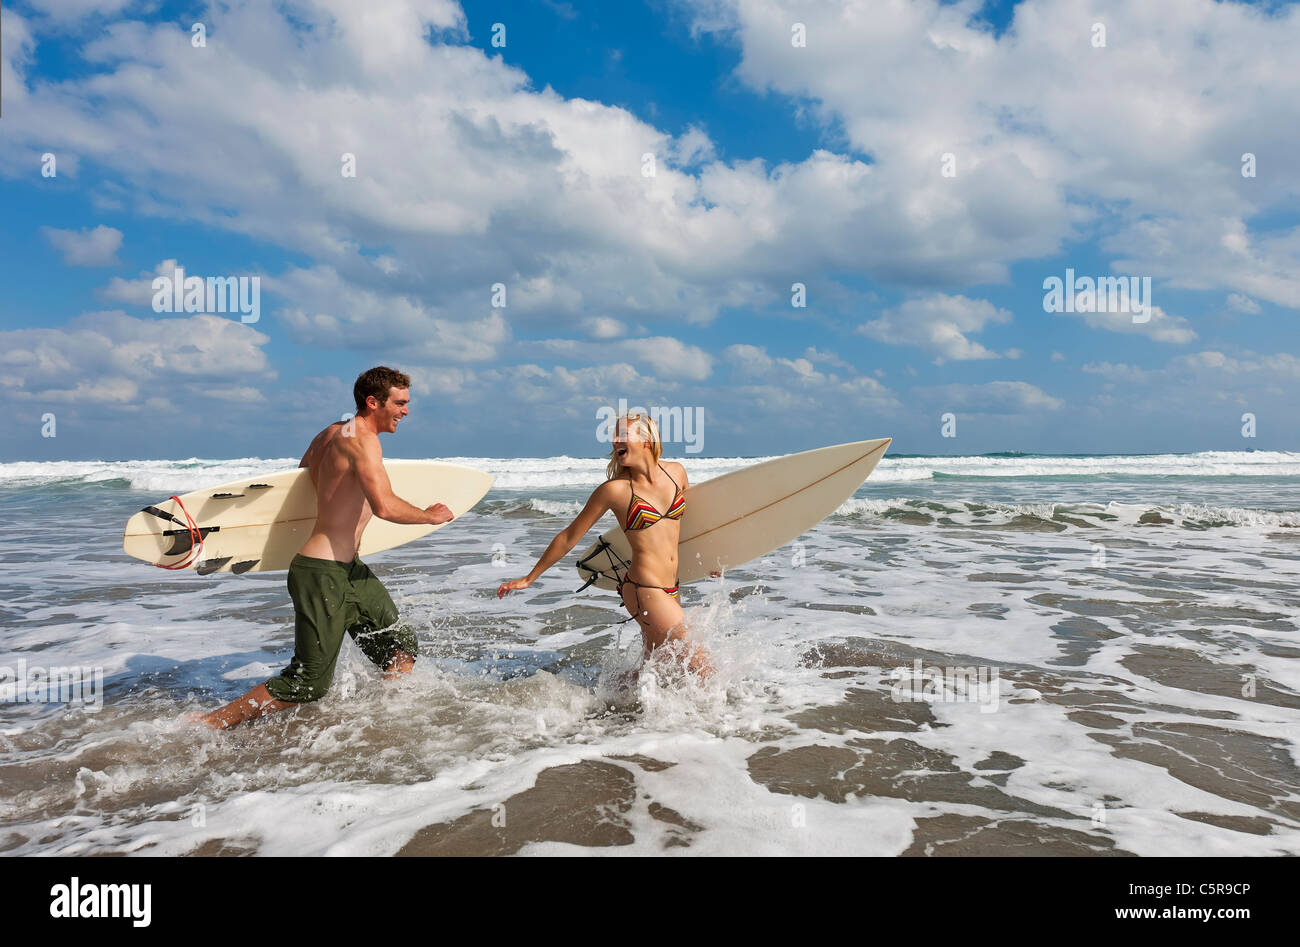 Zwei Surfer in den Wellen Spaß. Stockfoto